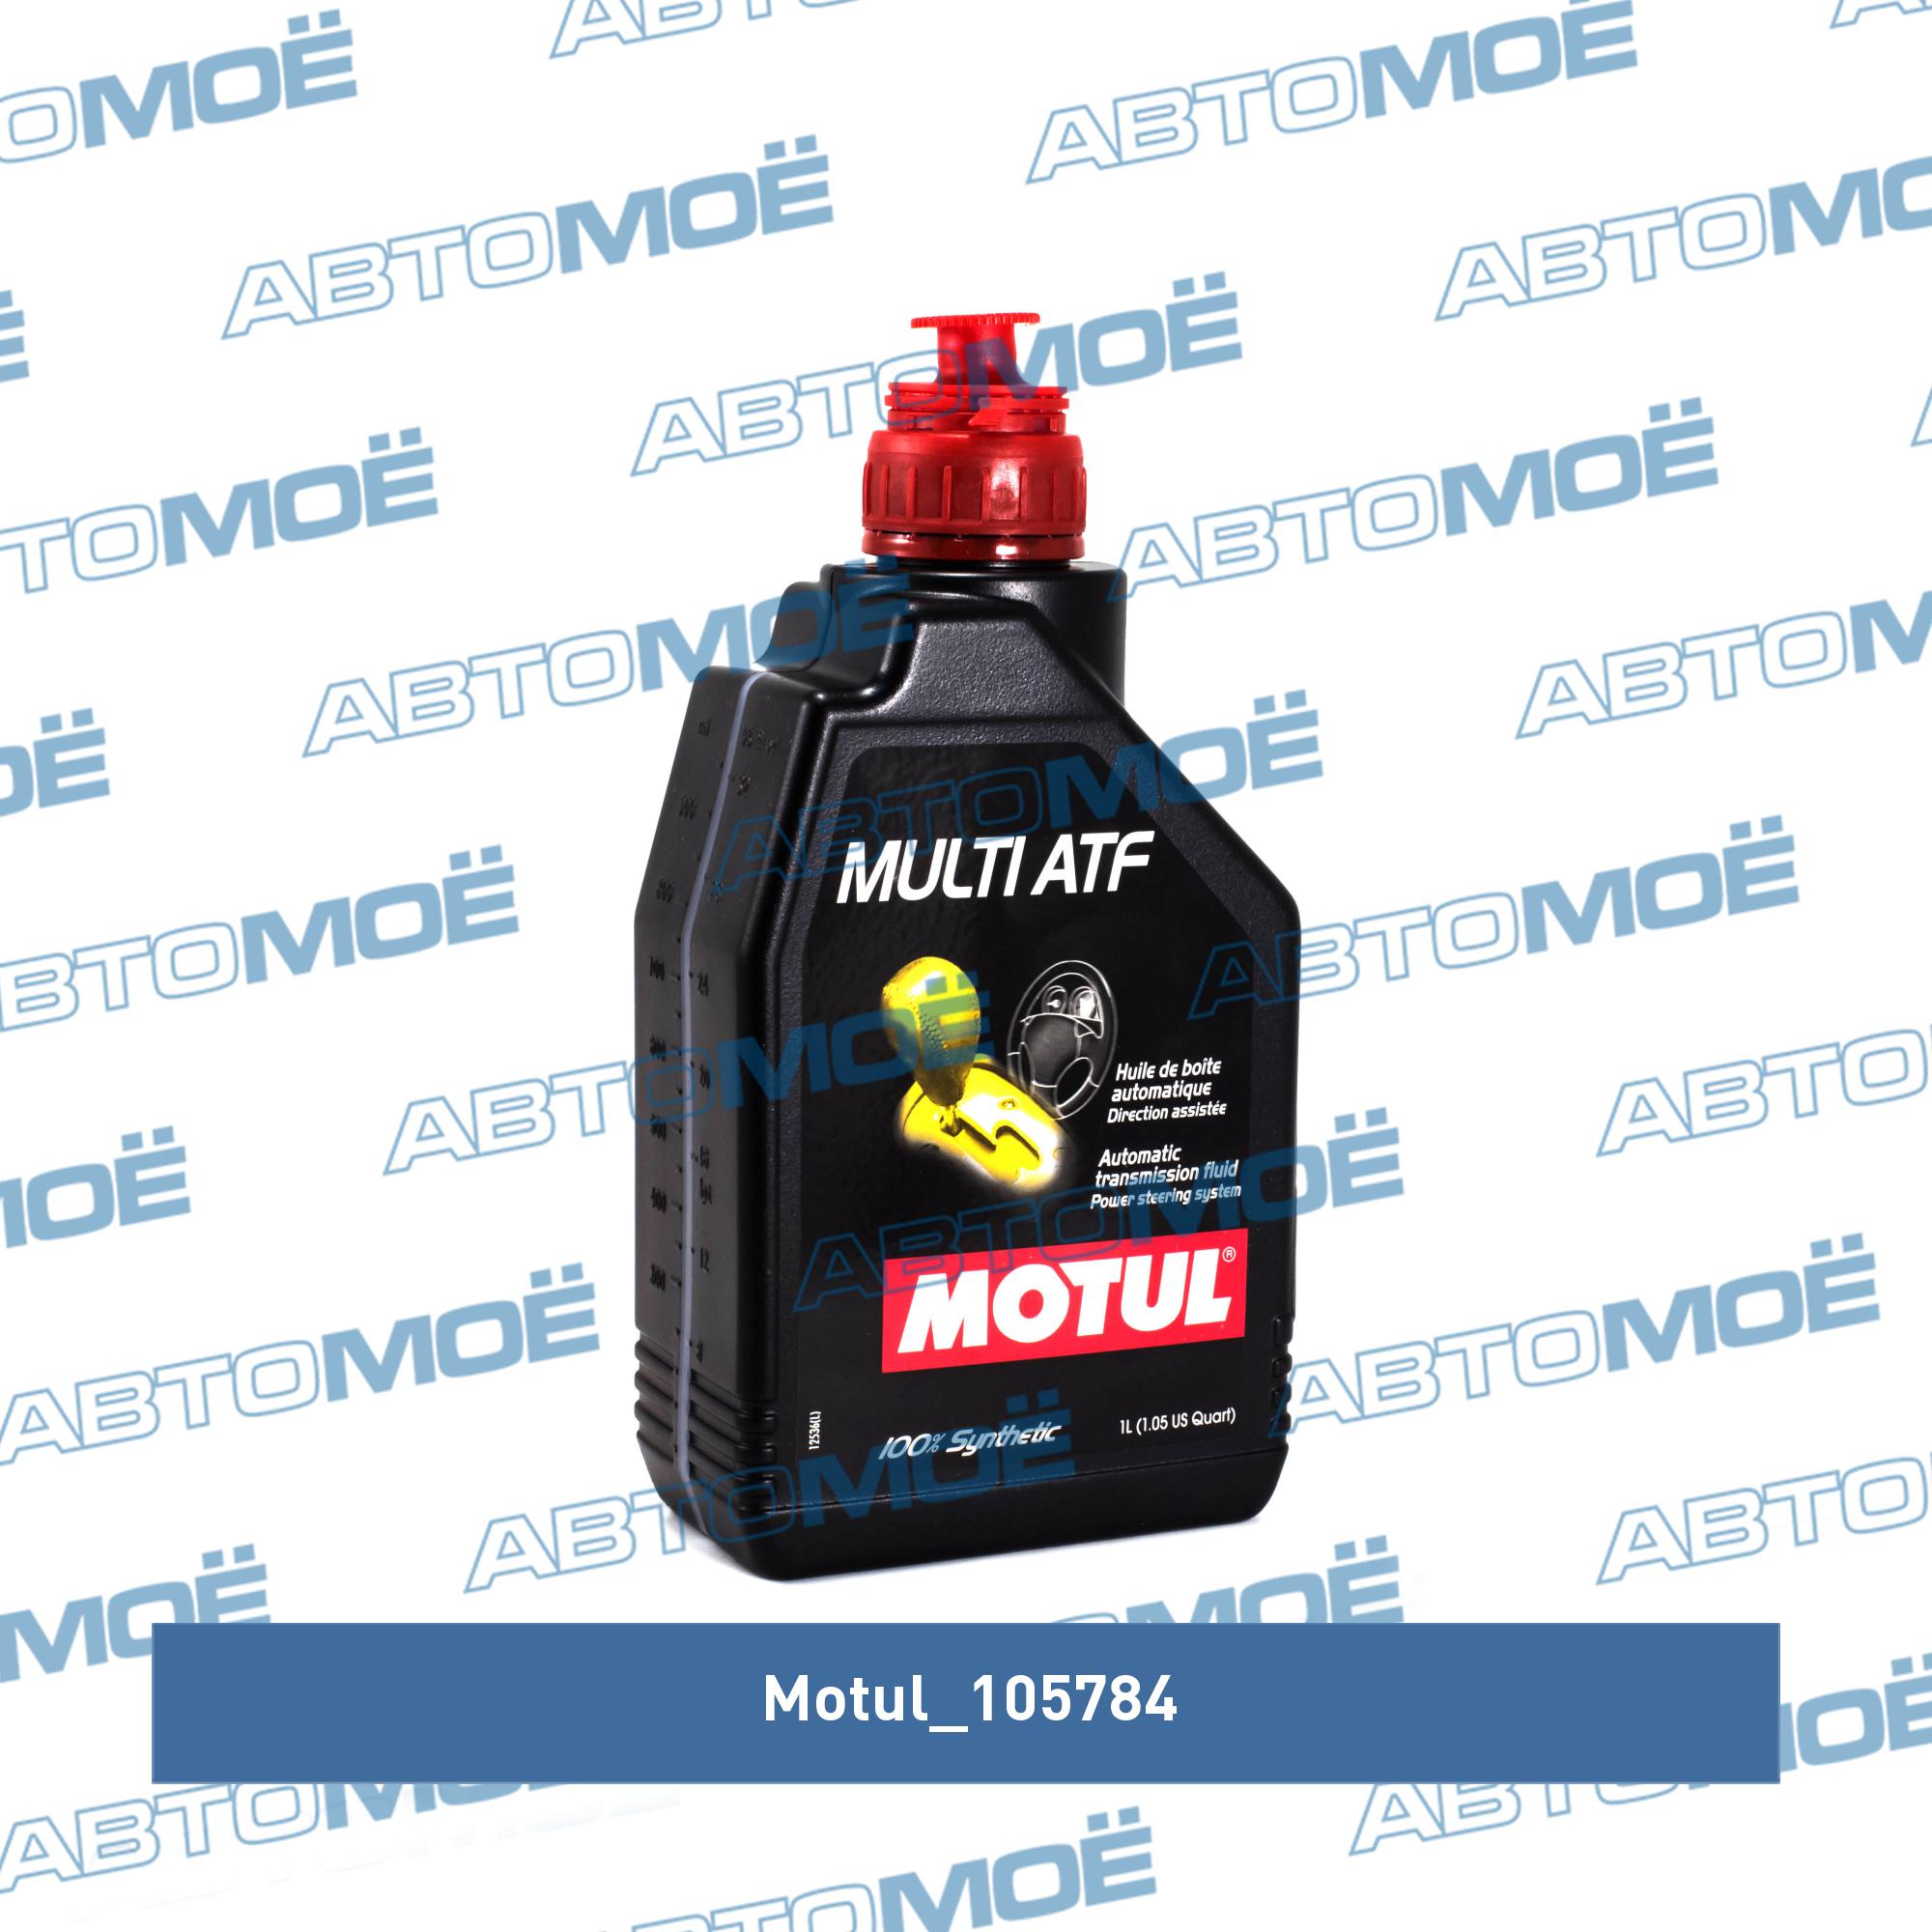 Atf 6 трансмиссионное масло. Motul ATF vi (1л) 105774. Motul 105784 масло трансмиссионное синтетическое "Multi ATF", 1л. Motul ATF vi 1л. Motul 3317 ATF.